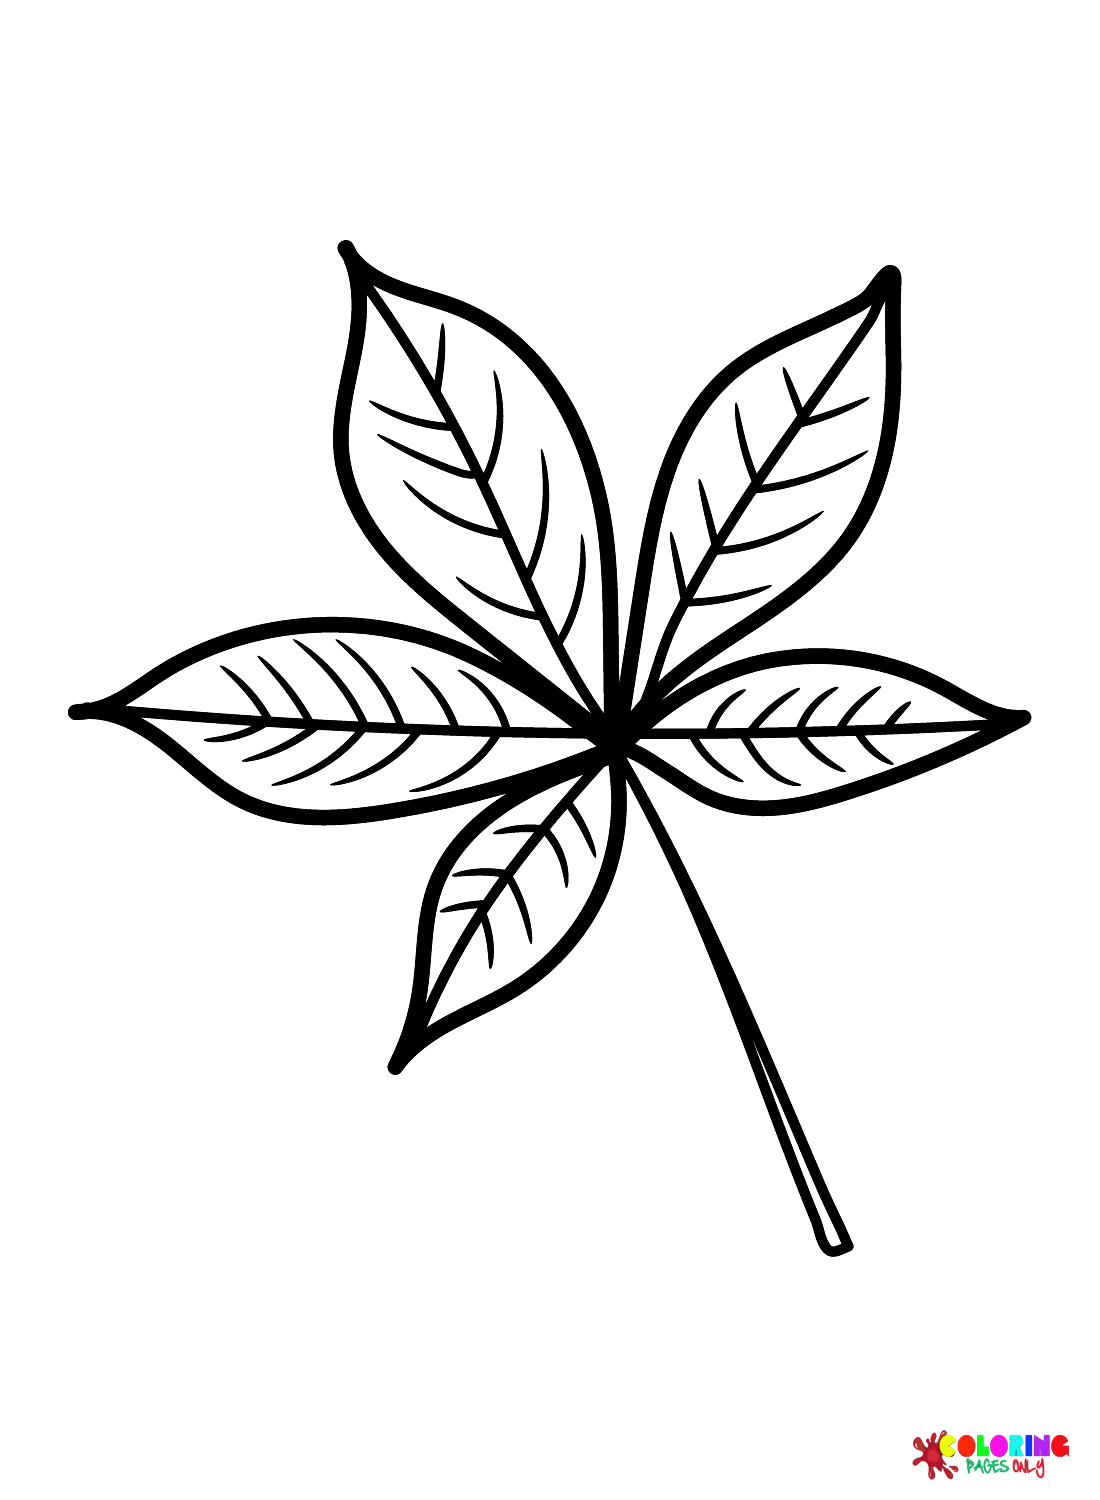 Foglia di Buckeye dalle foglie